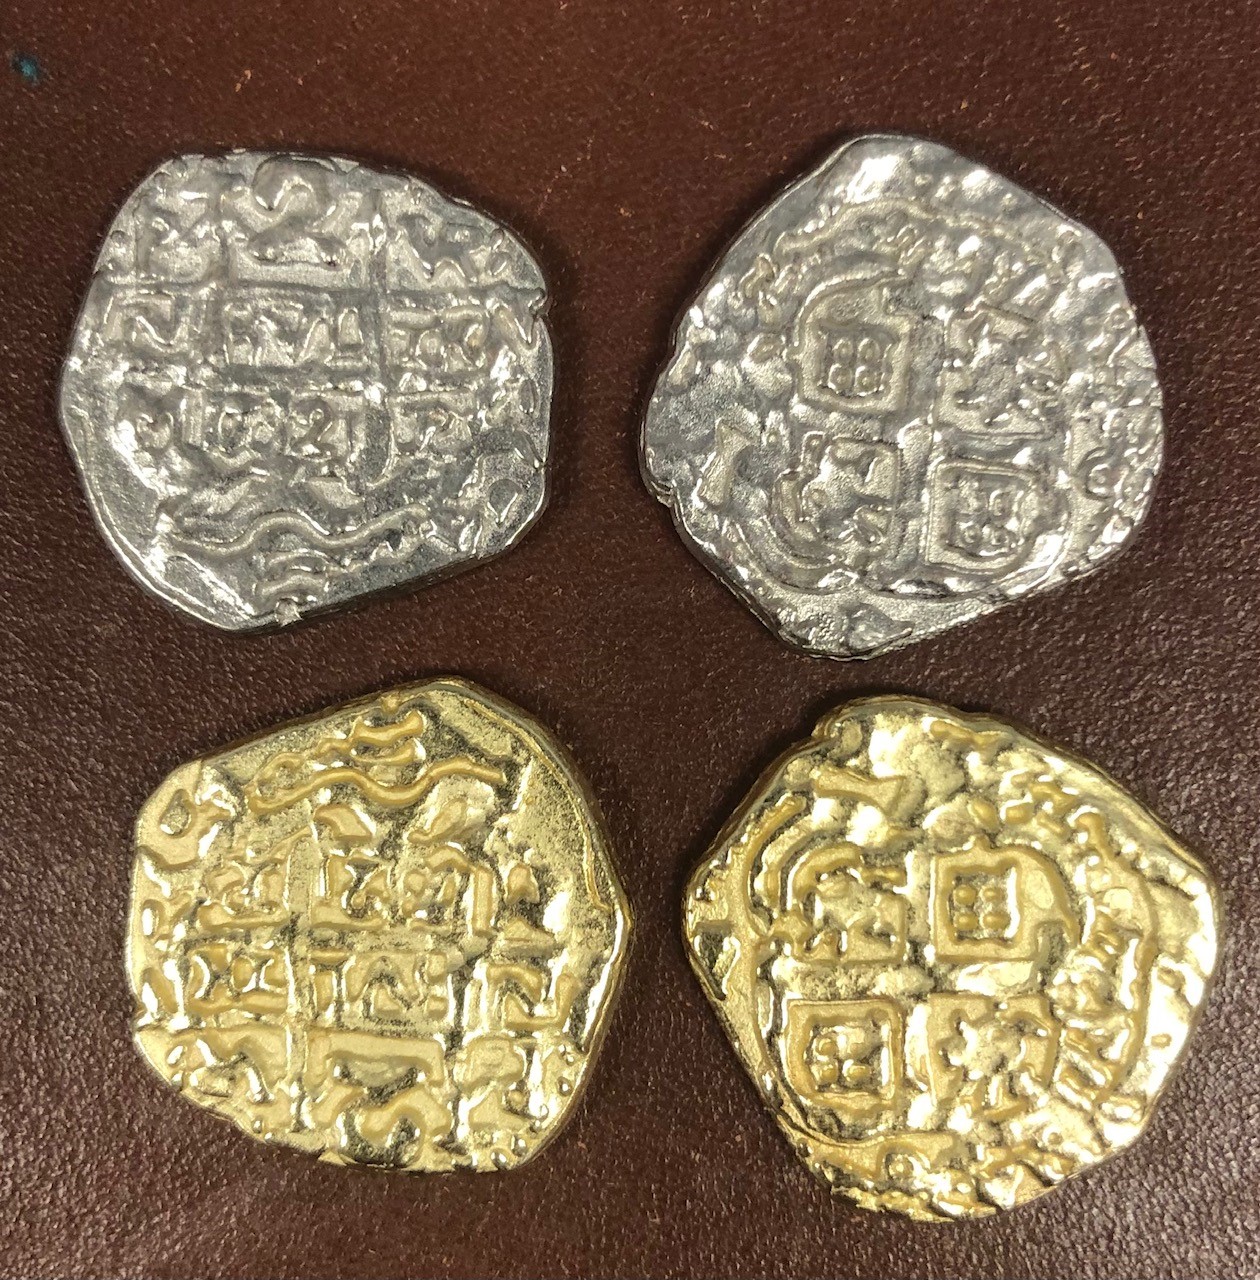 REPLICA GOLD COLOURED DOUBLON SPANISH ARMADA COIN PIRATES TREASURE G70 ONE COIN PER ORDER 